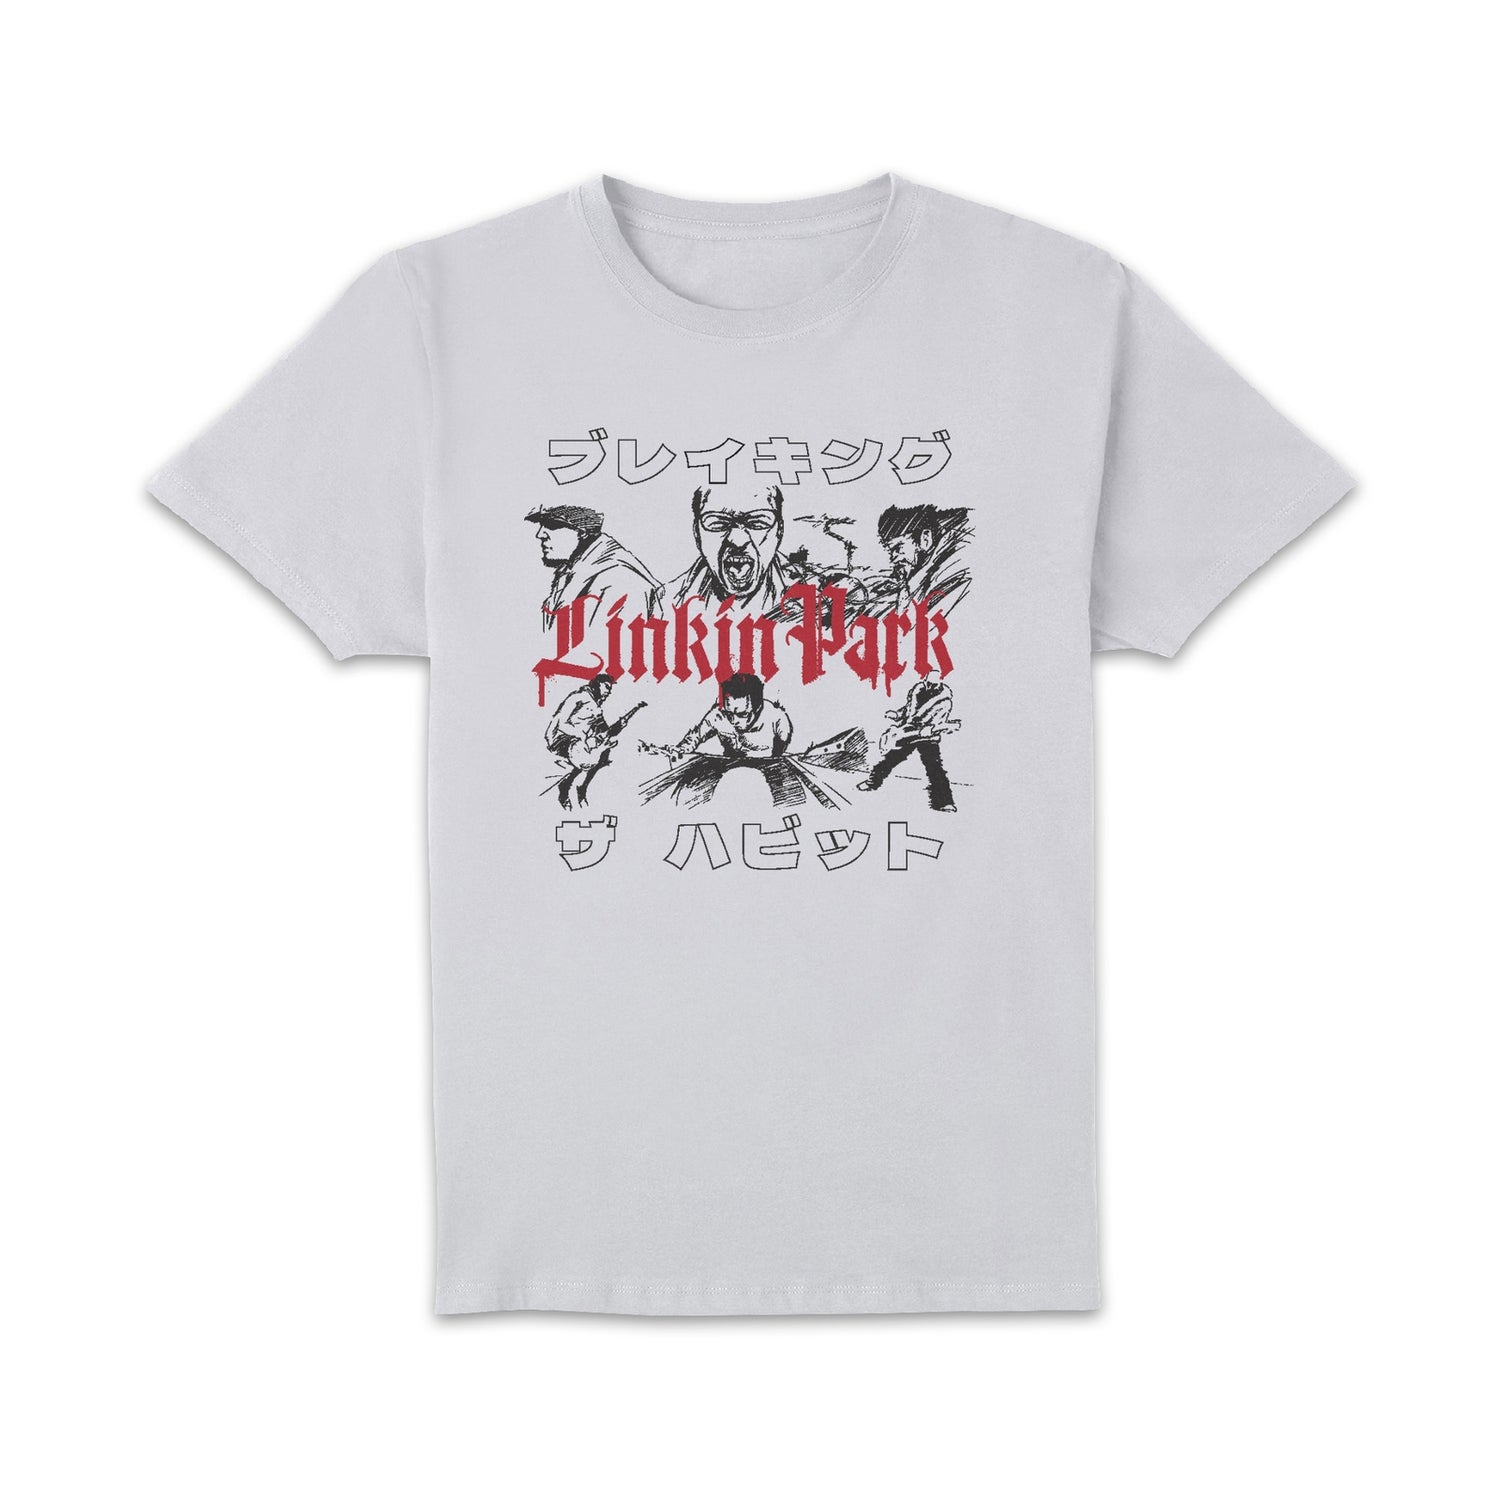 Linkin Park Sketch Unisex T-Shirt - White Clothing - Zavvi UK